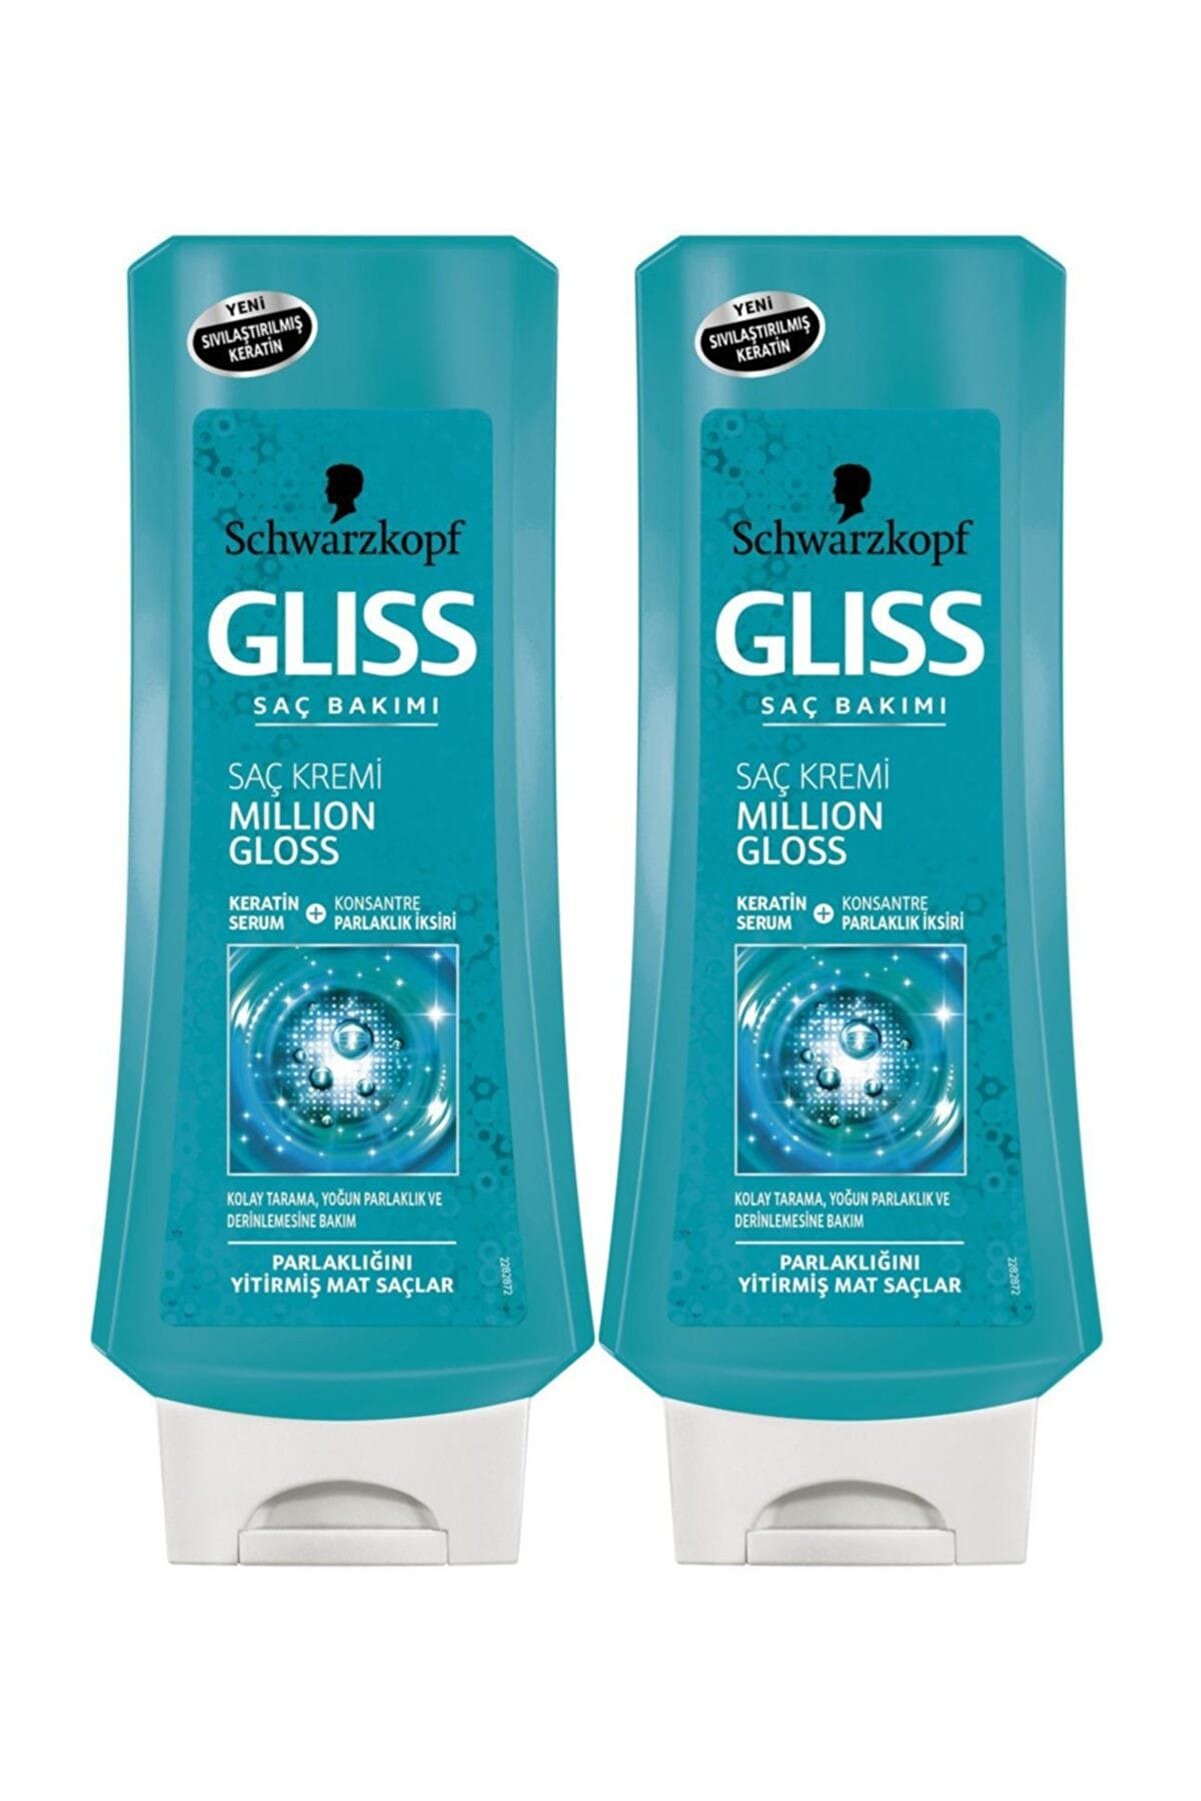 Gliss Mıllıon gloss Saç Kremi 360 ml x 2 Paket